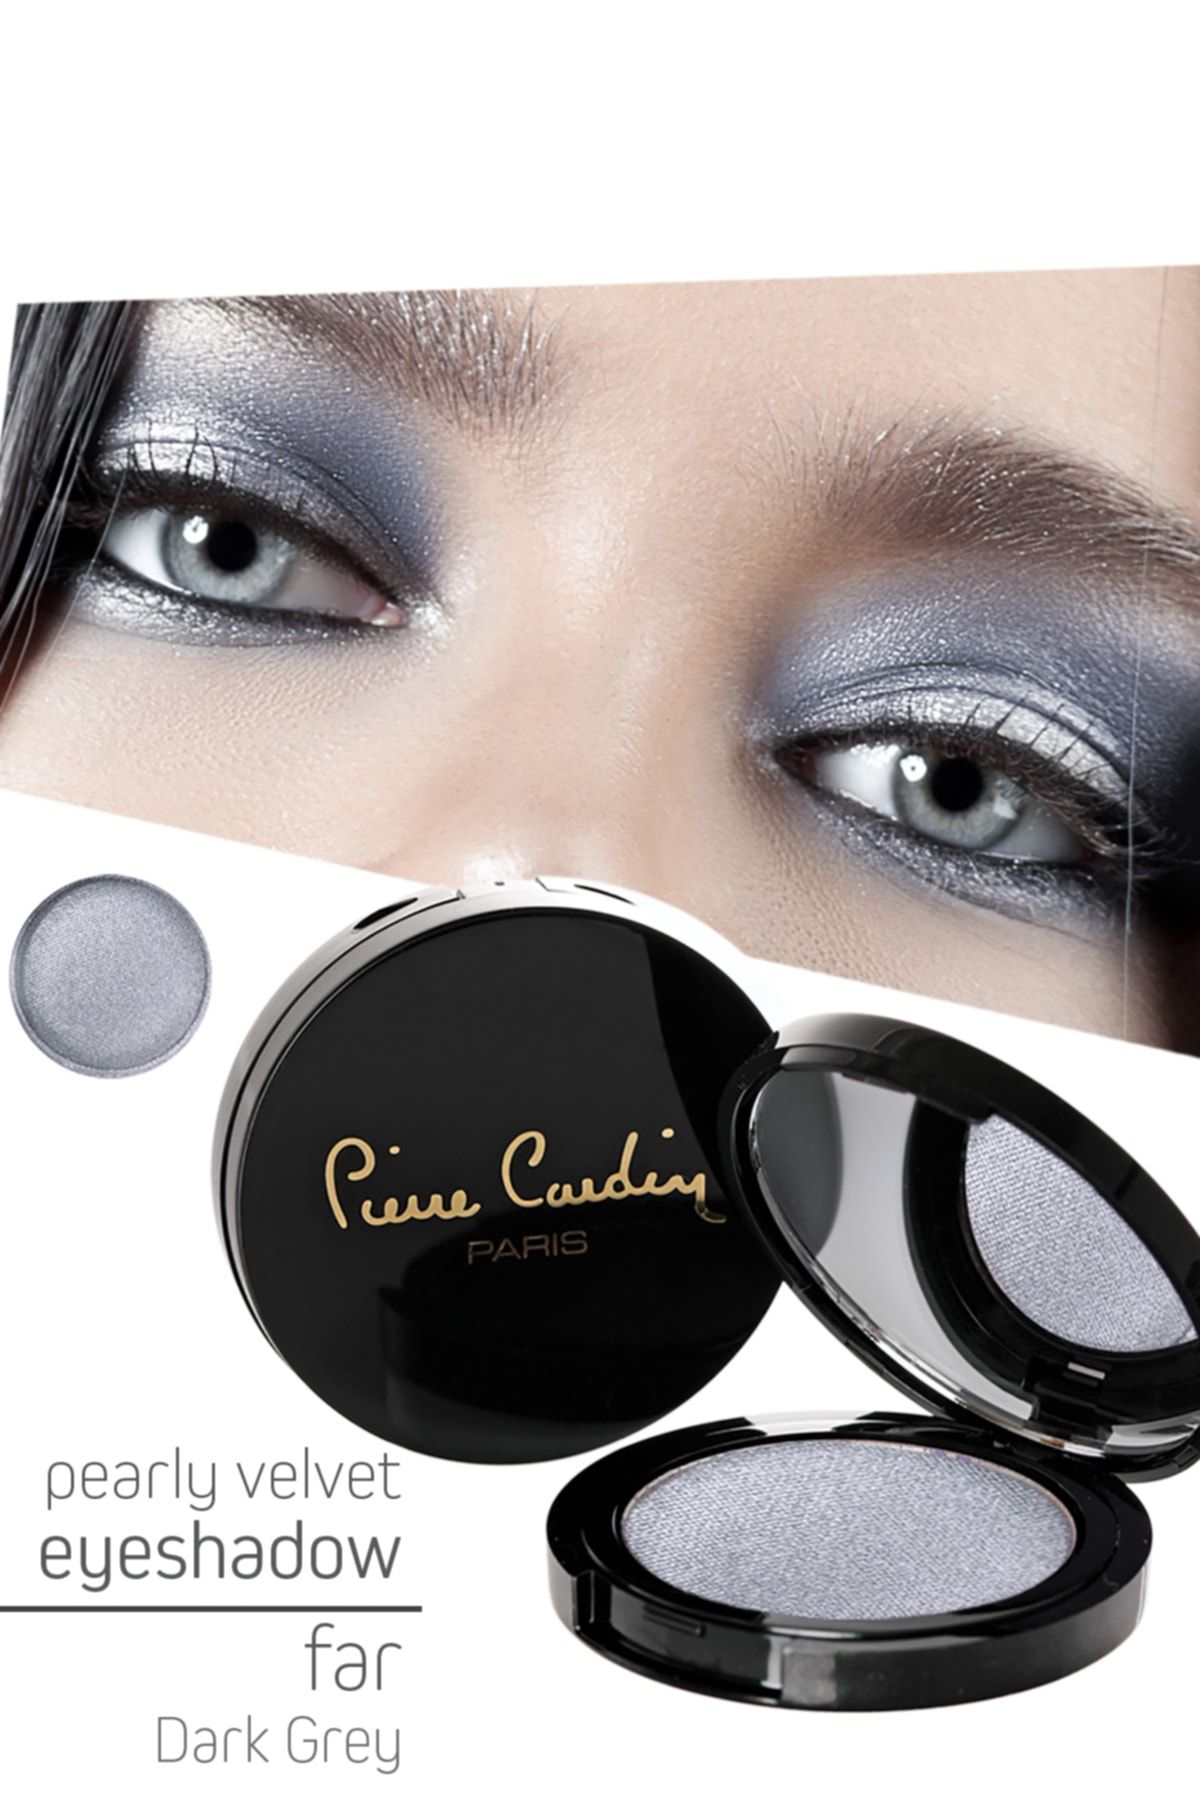 Pierre Cardin Pearly Velvet Eyeshadow Göz Farı - Dark Grey 975 13251